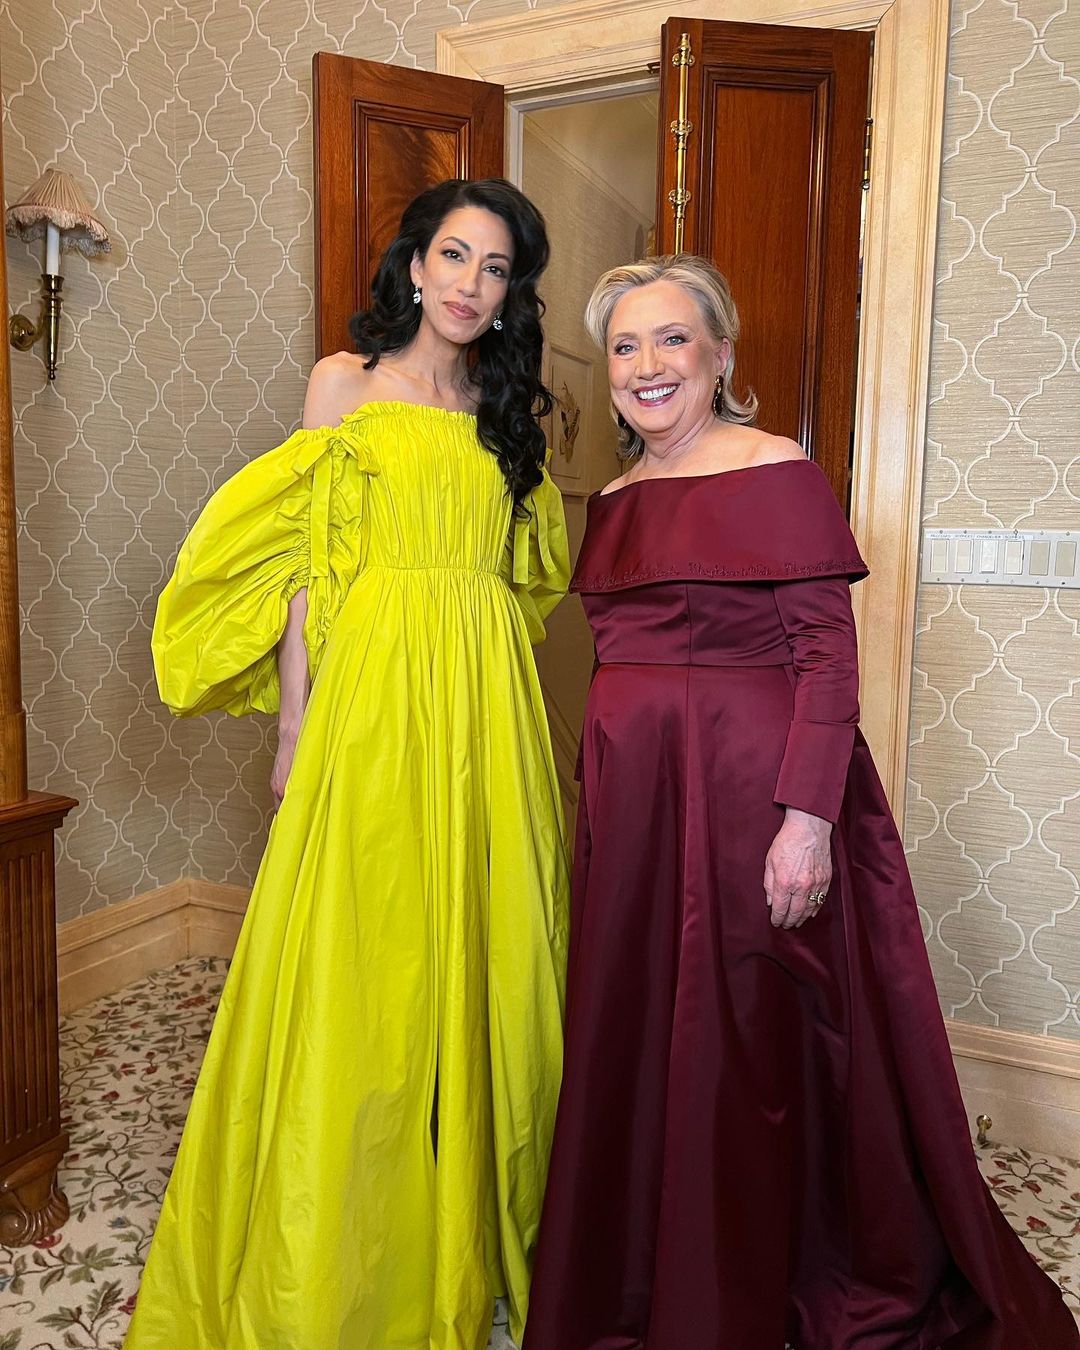 Хума Абедин и Хилари Клинтон в вечер Met Gala. Фото © Instagram (запрещён на территории Российской Федерации) / humaabedin